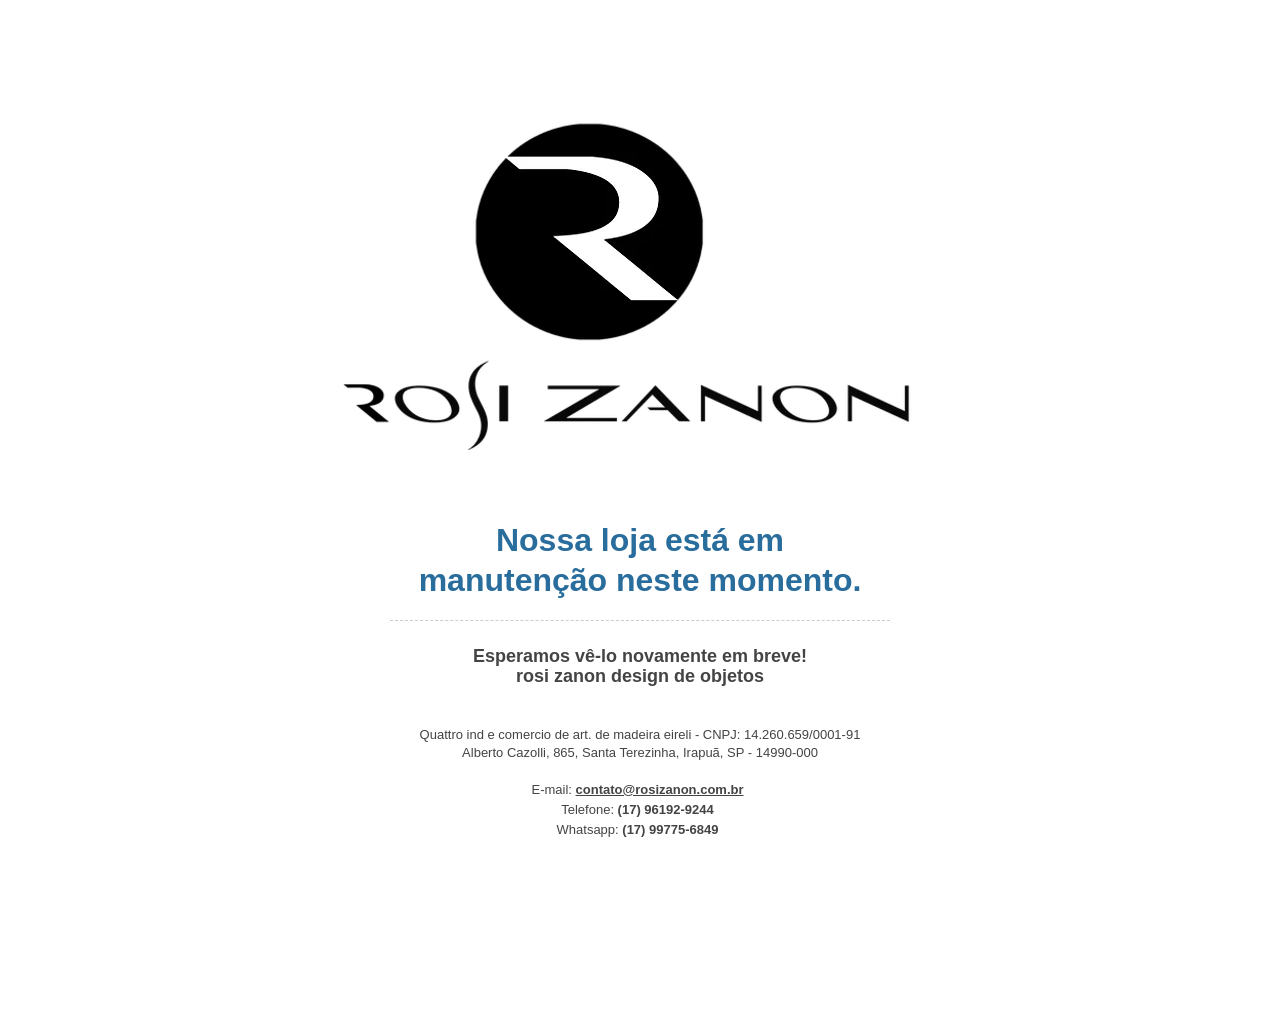 rosizanon.com.br